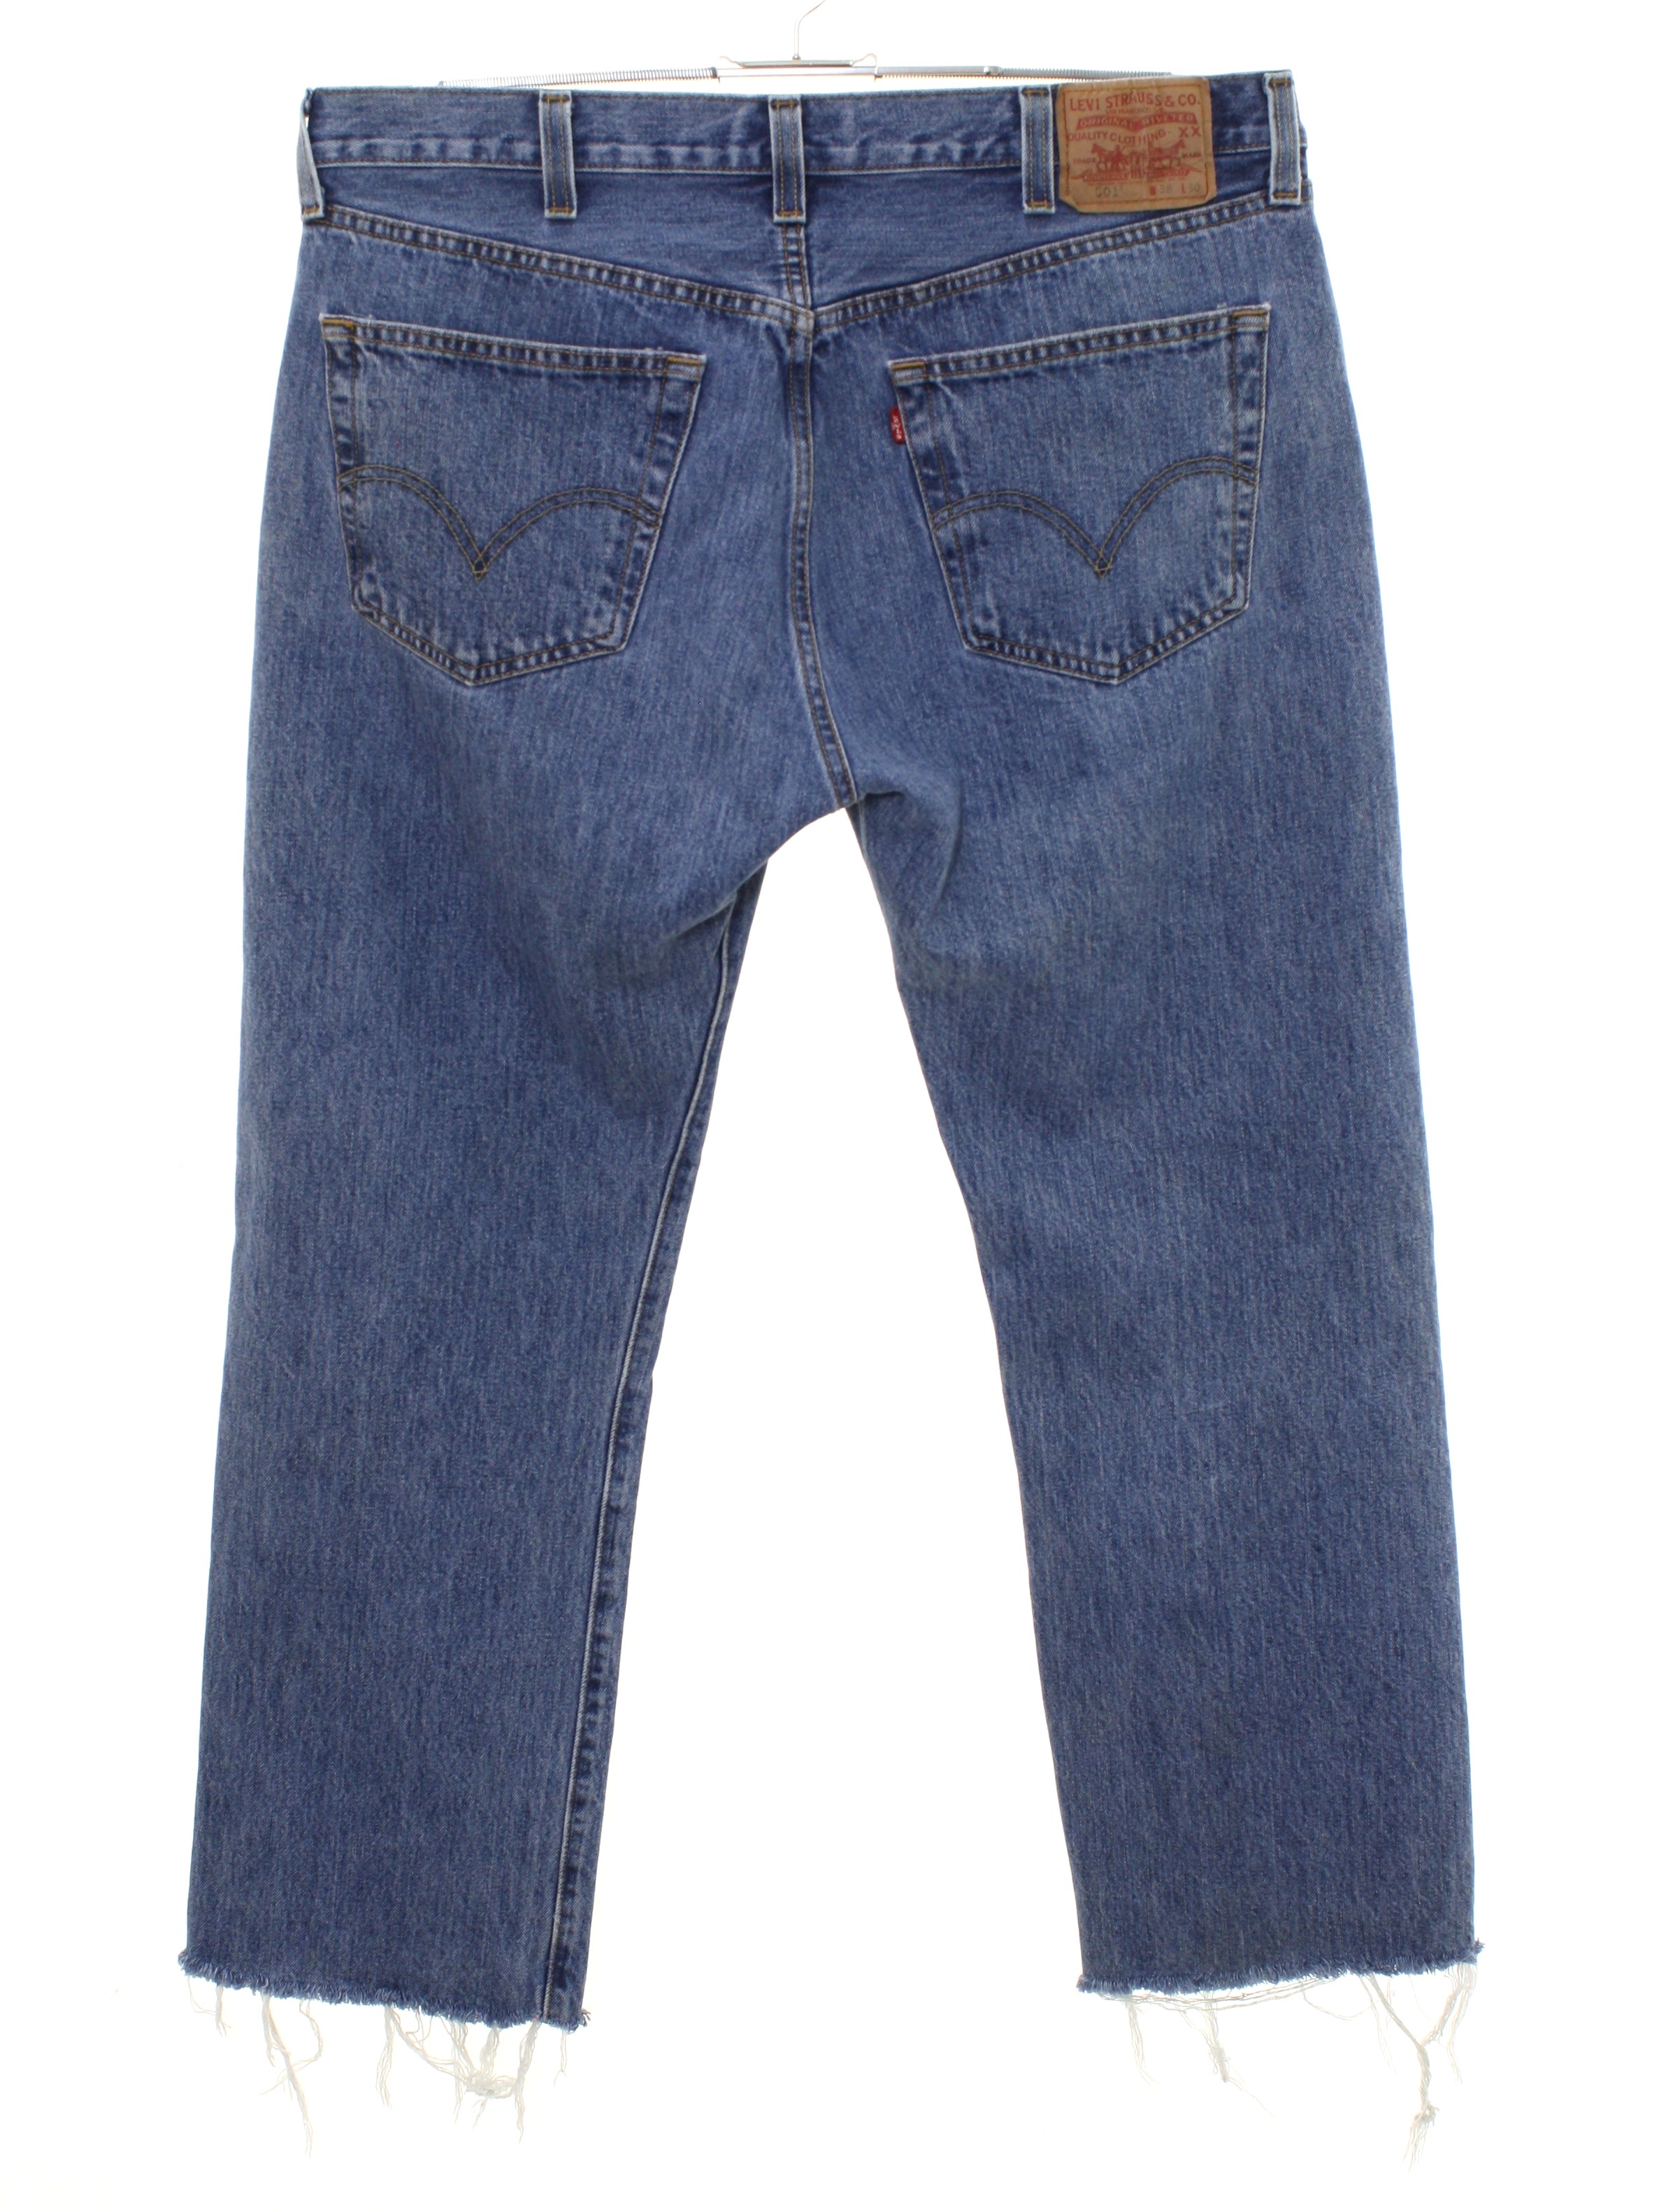 90's Vintage Pants: Late 90s -Levis 501- Mens faded blue cotton denim ...